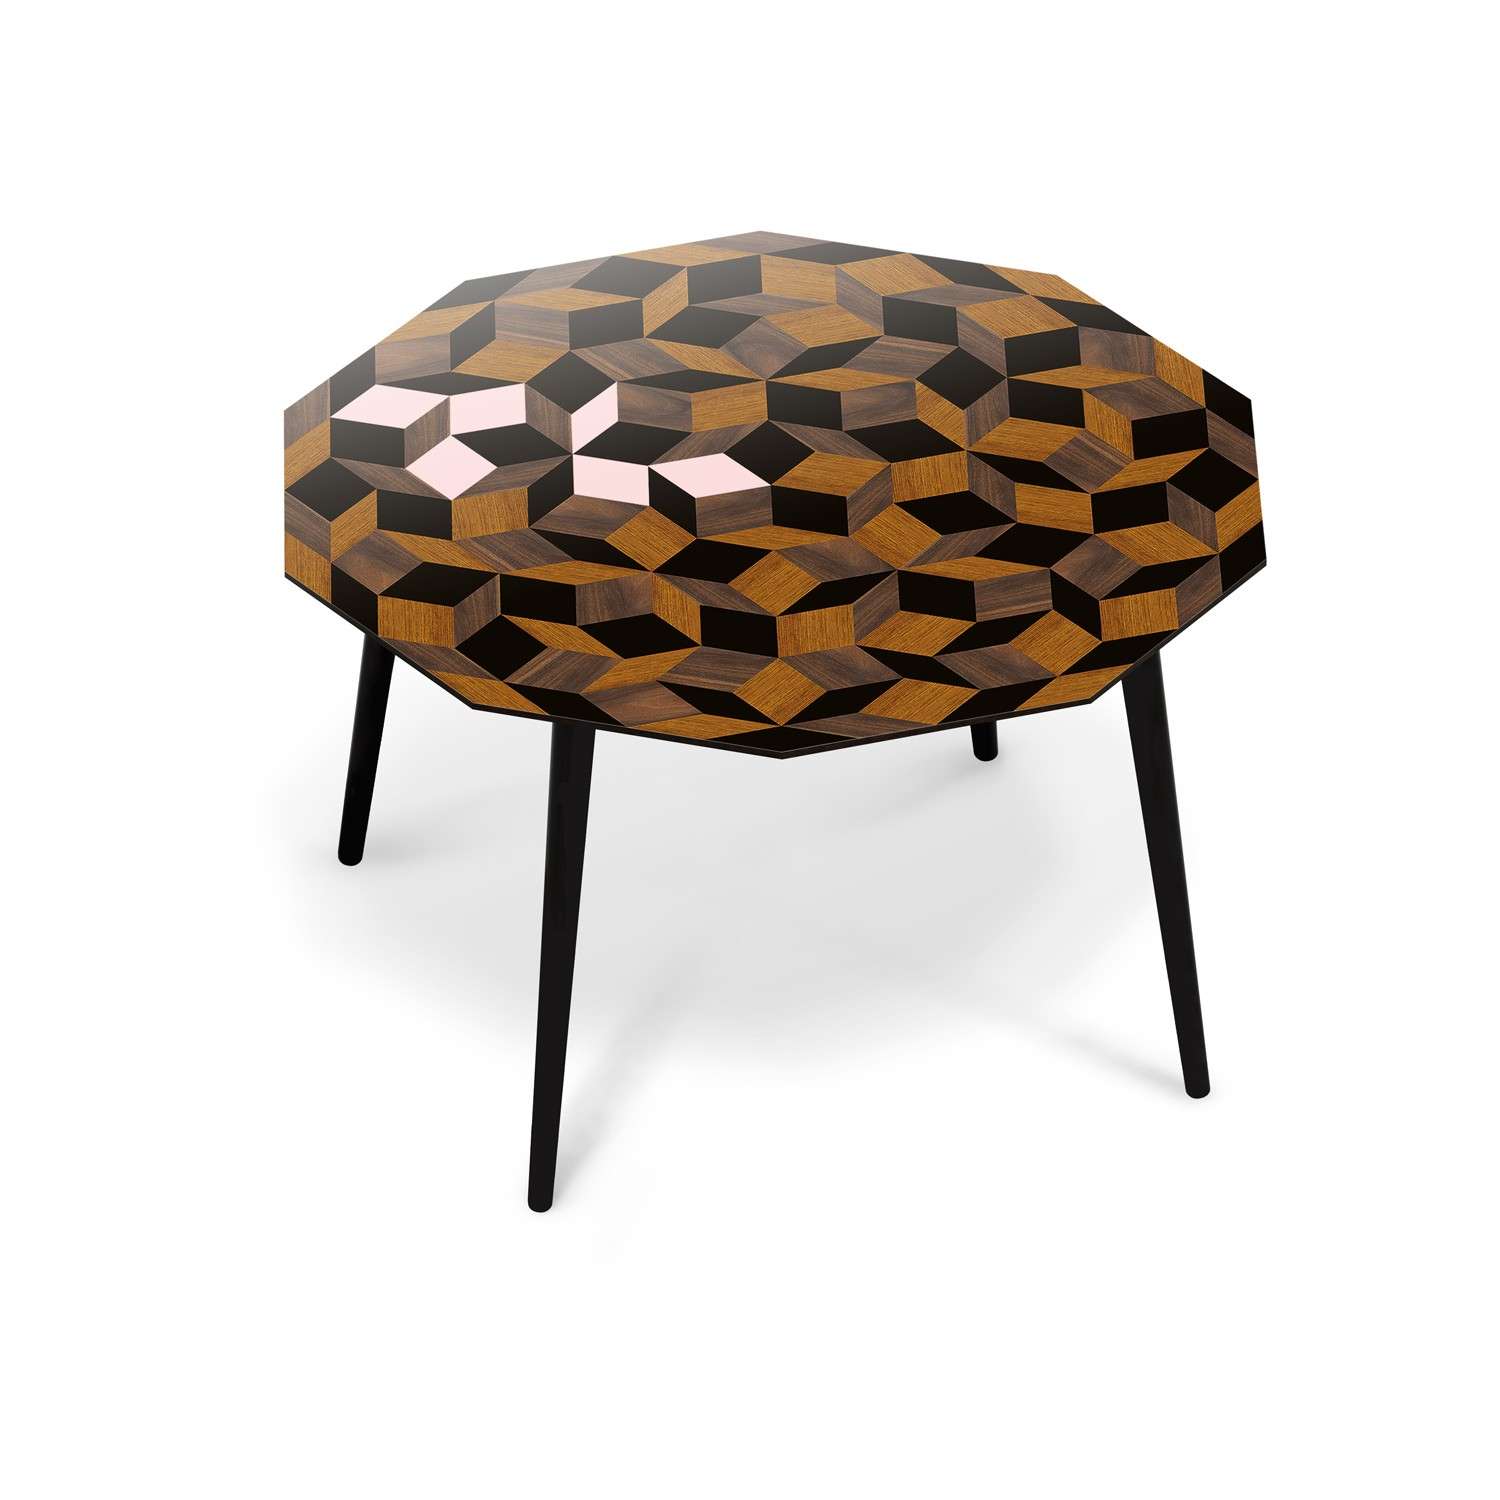 Table à manger Penrose Spring Wood, bois et rose poudré Design IchetKar édition Bazartherapy